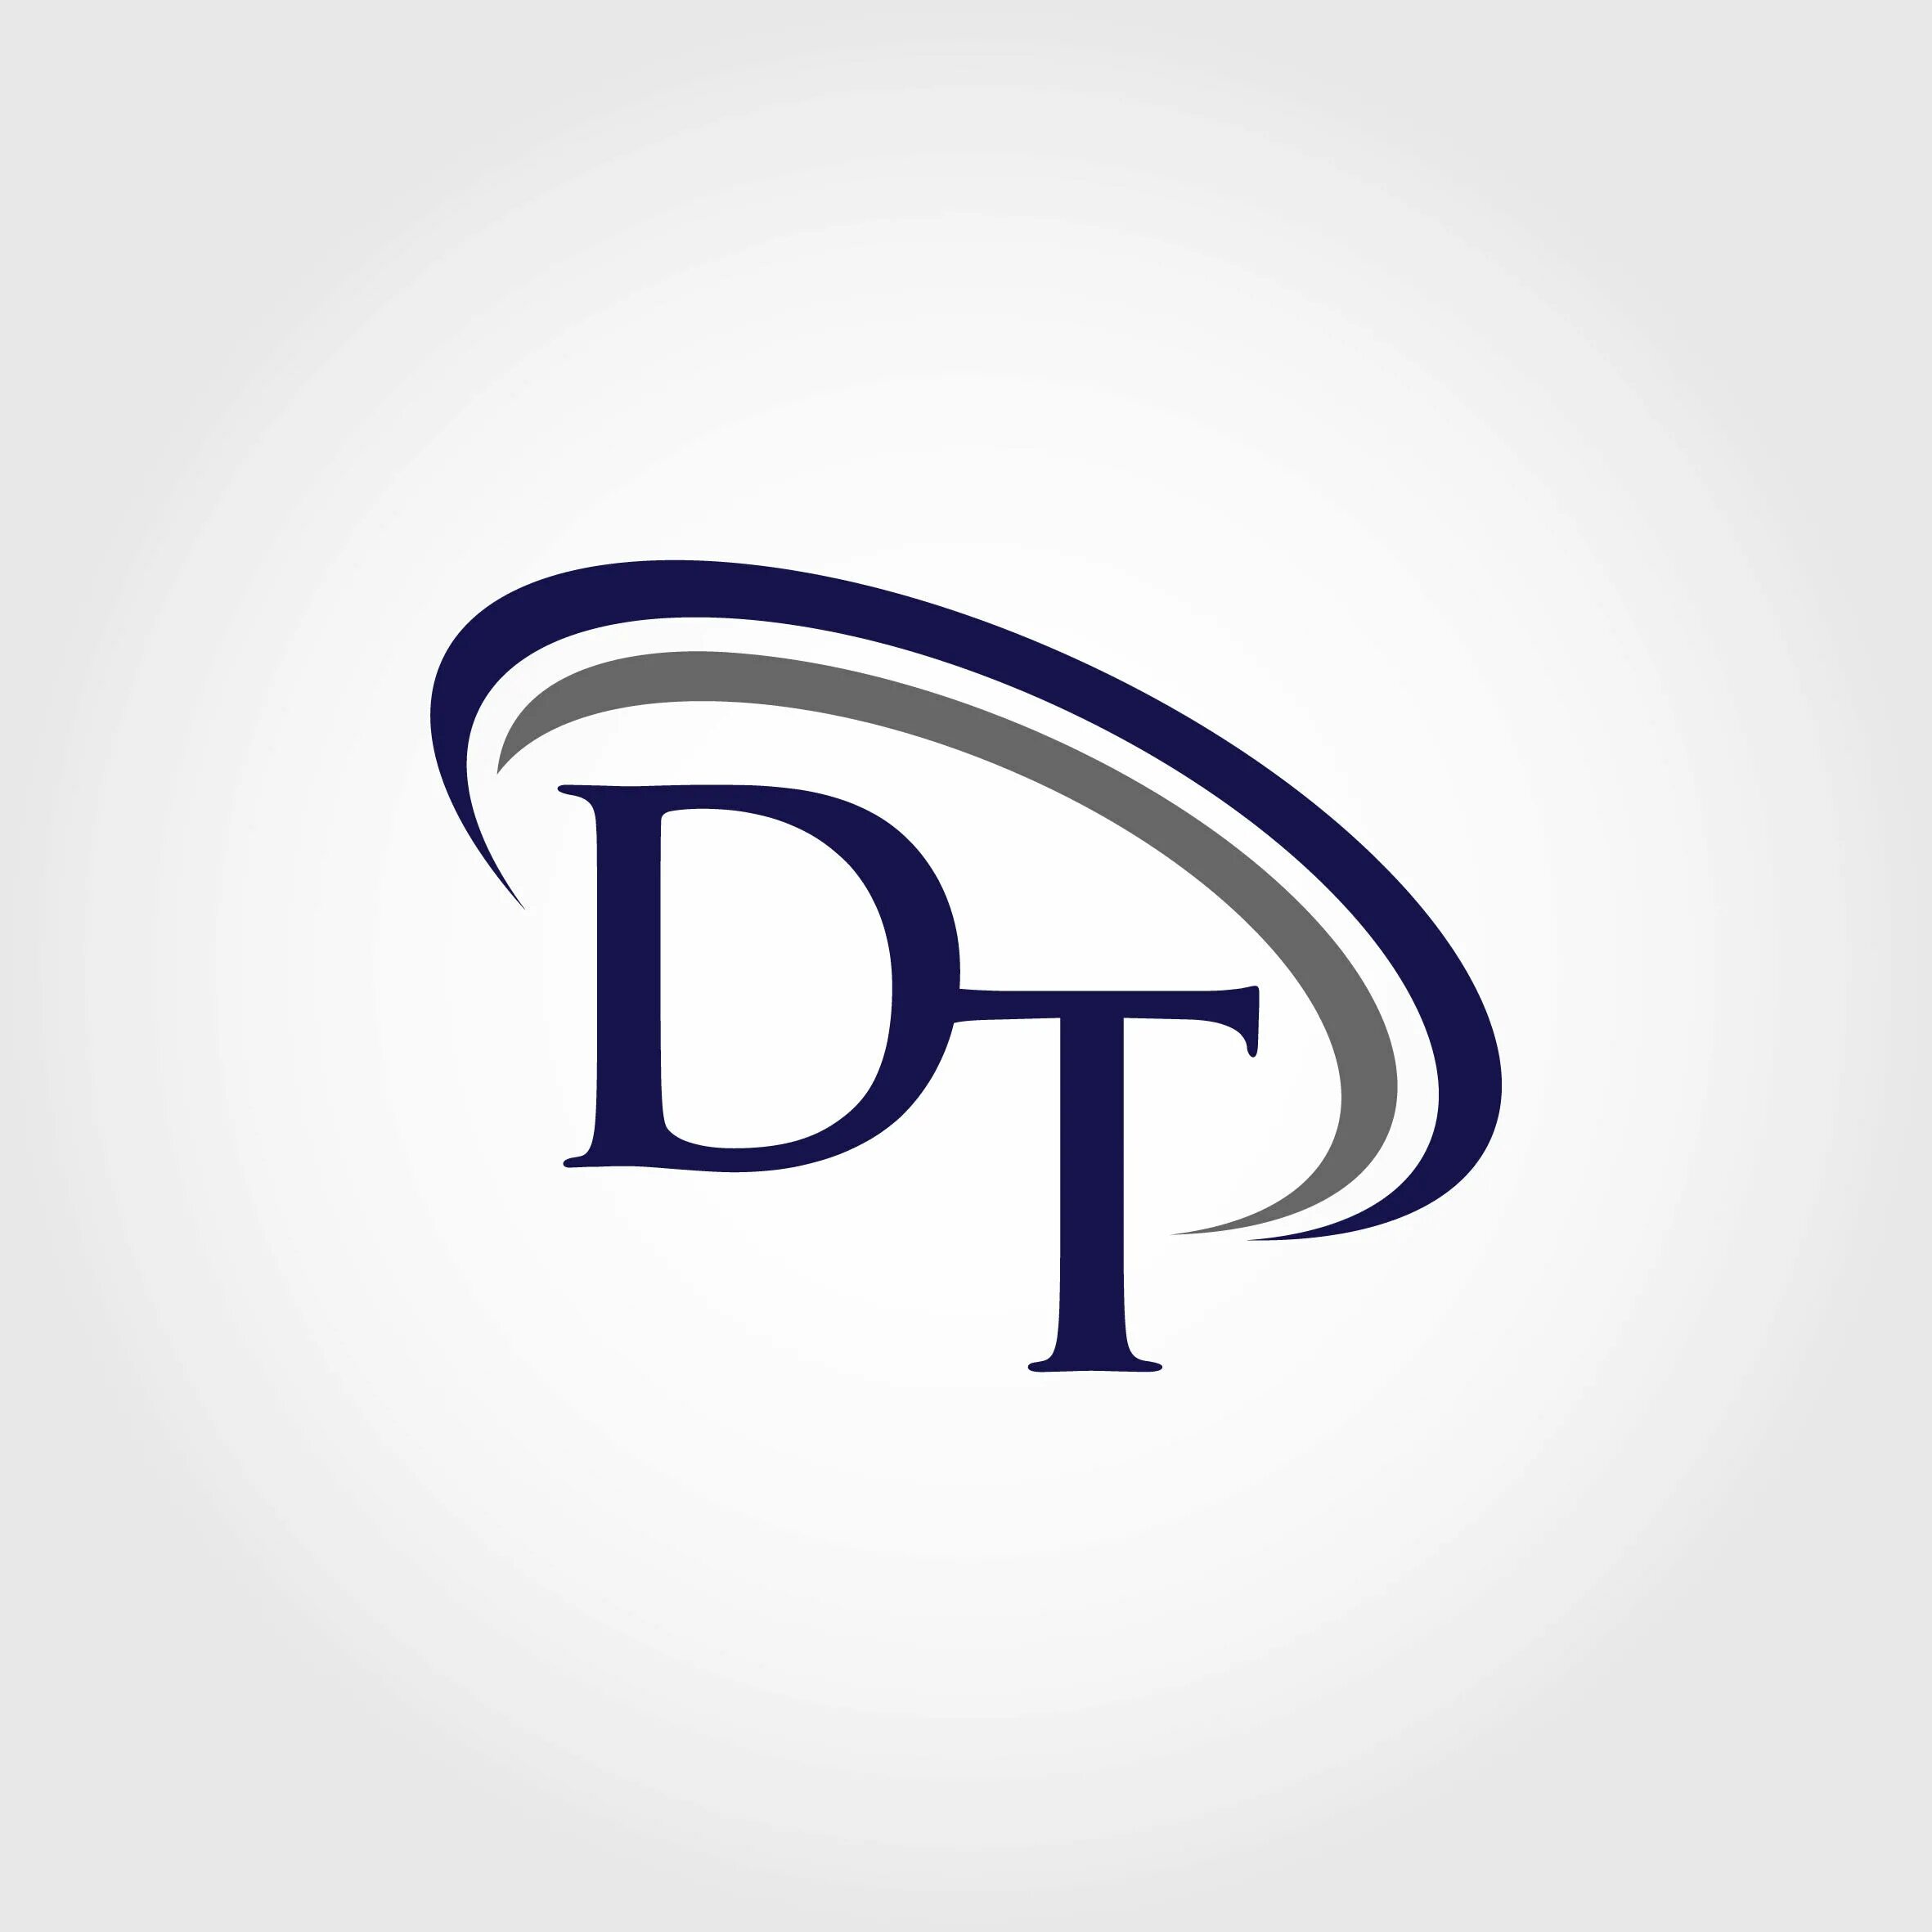 T d. ДТ логотип. Логотип буквы DT. DT запчасти logo. Лого ДТ Монограмма.